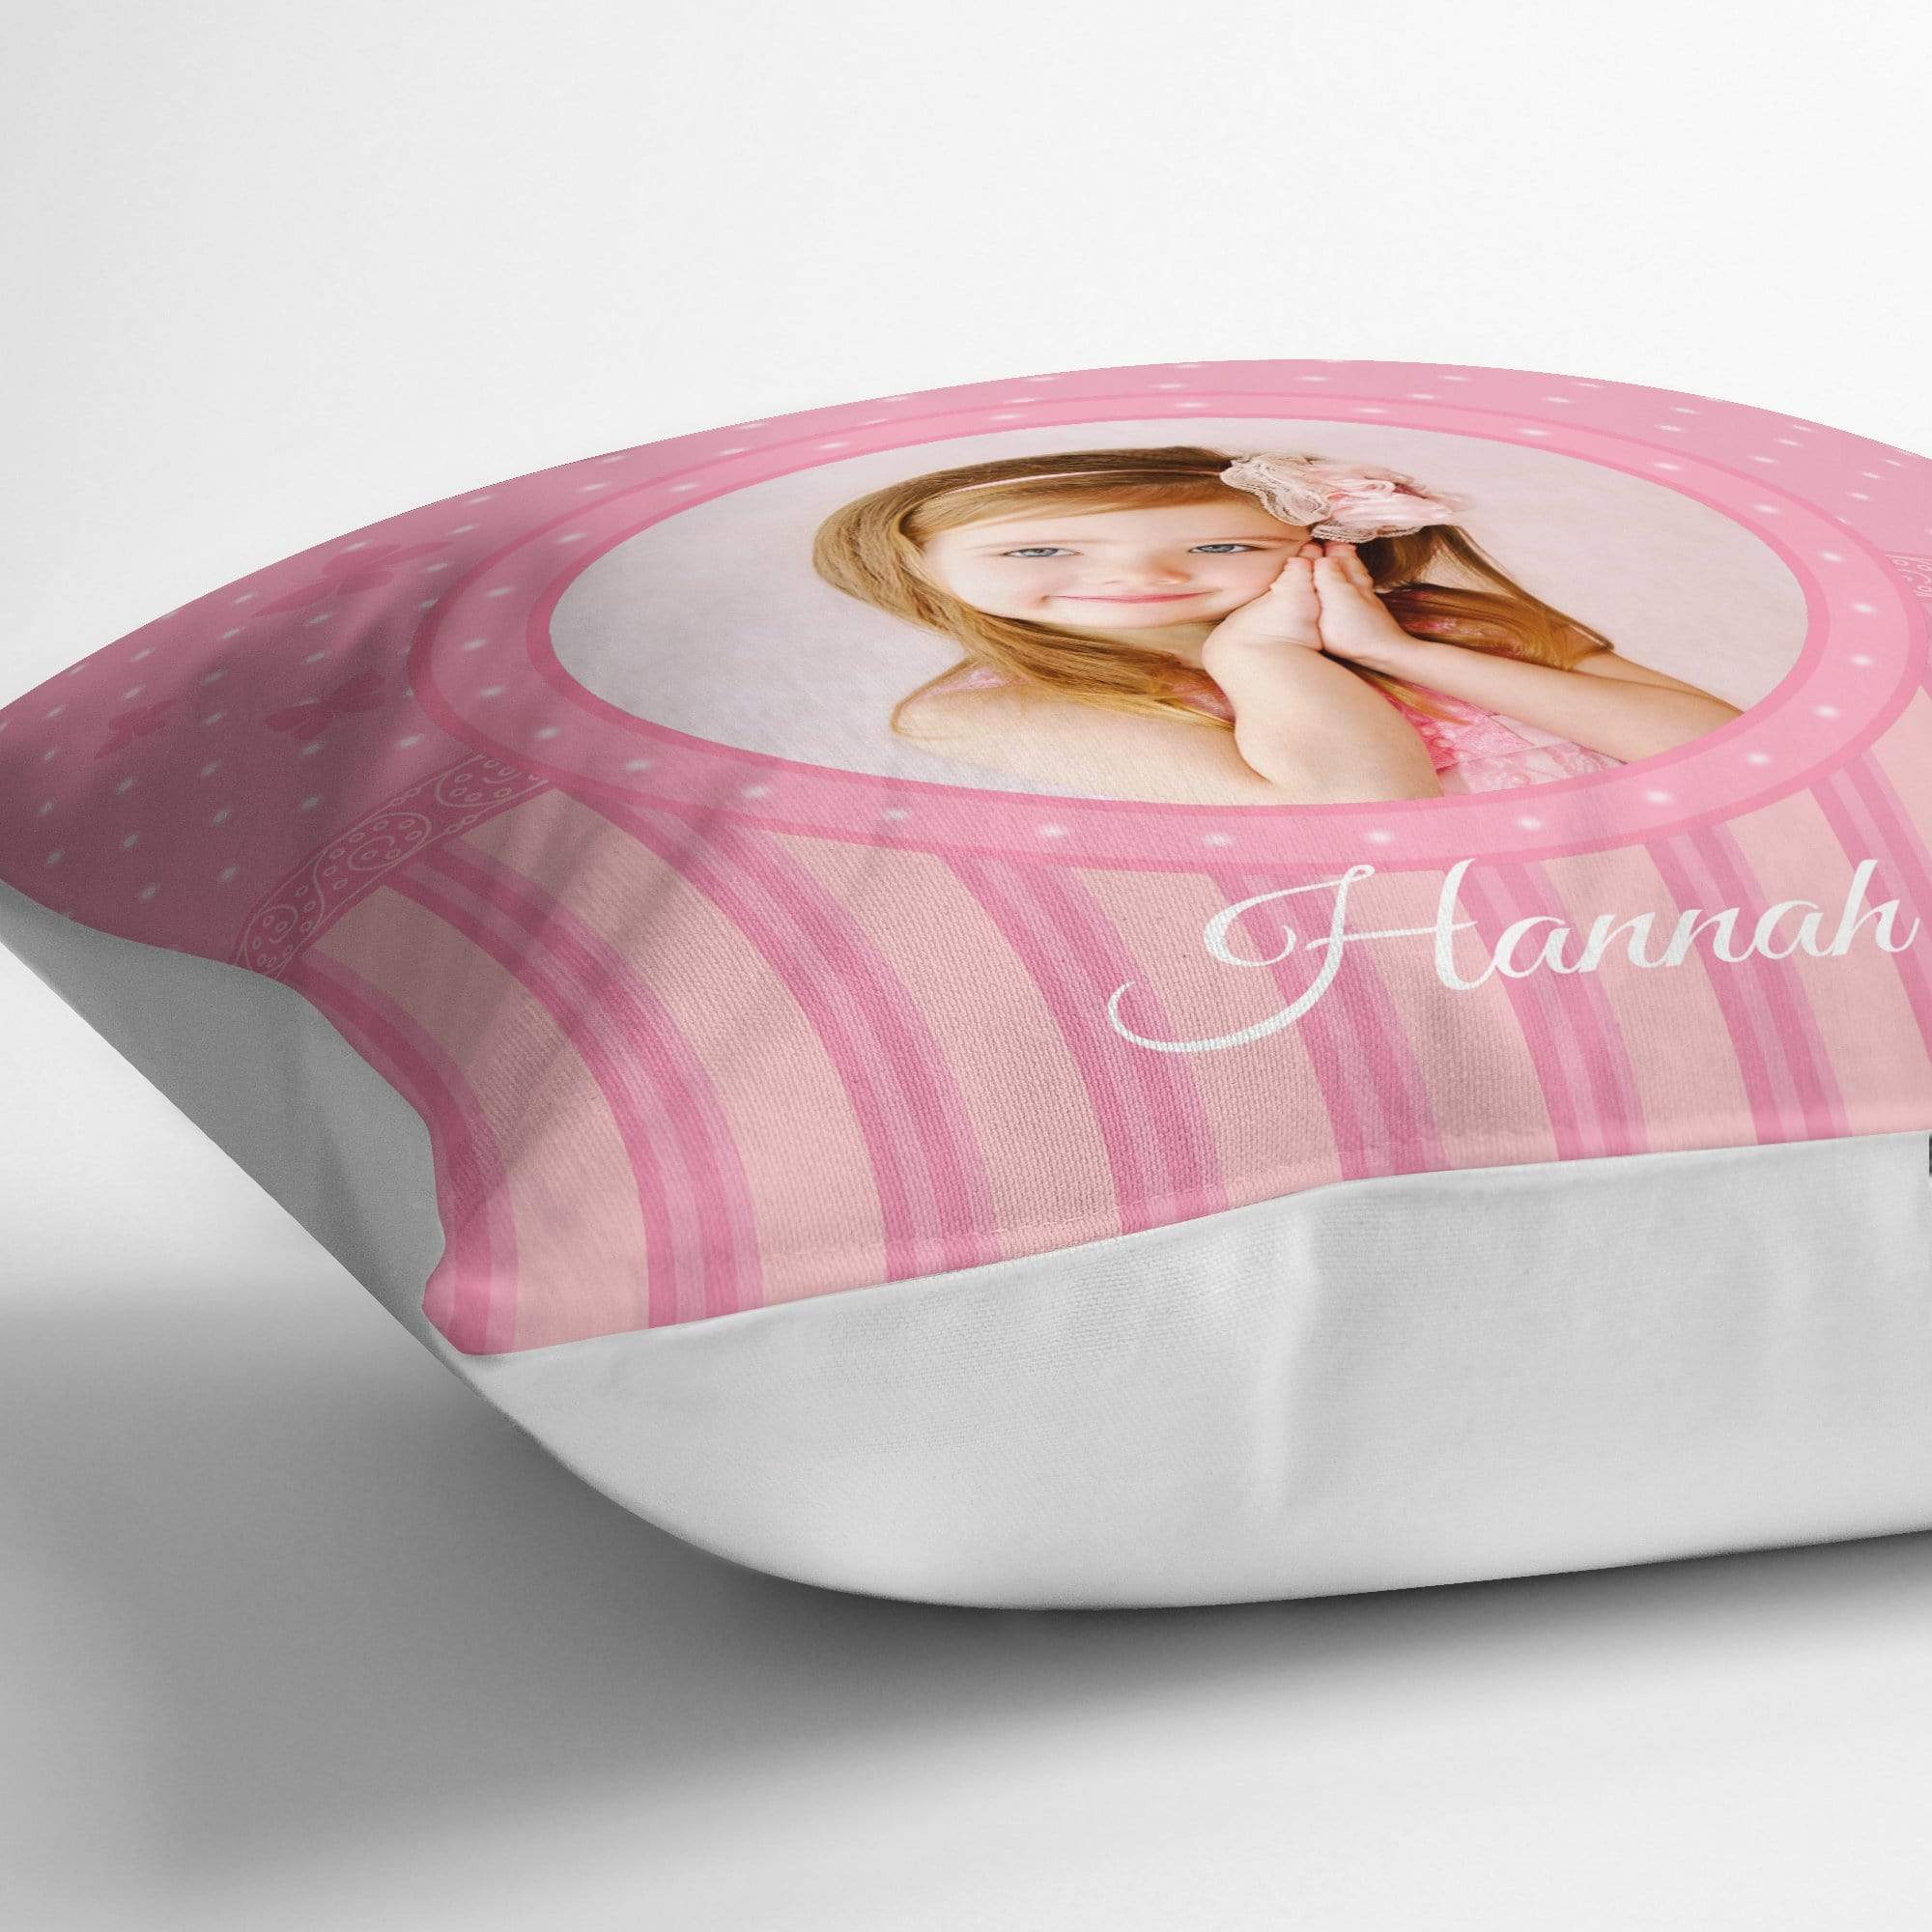 Pretty Pink Photo Cushion